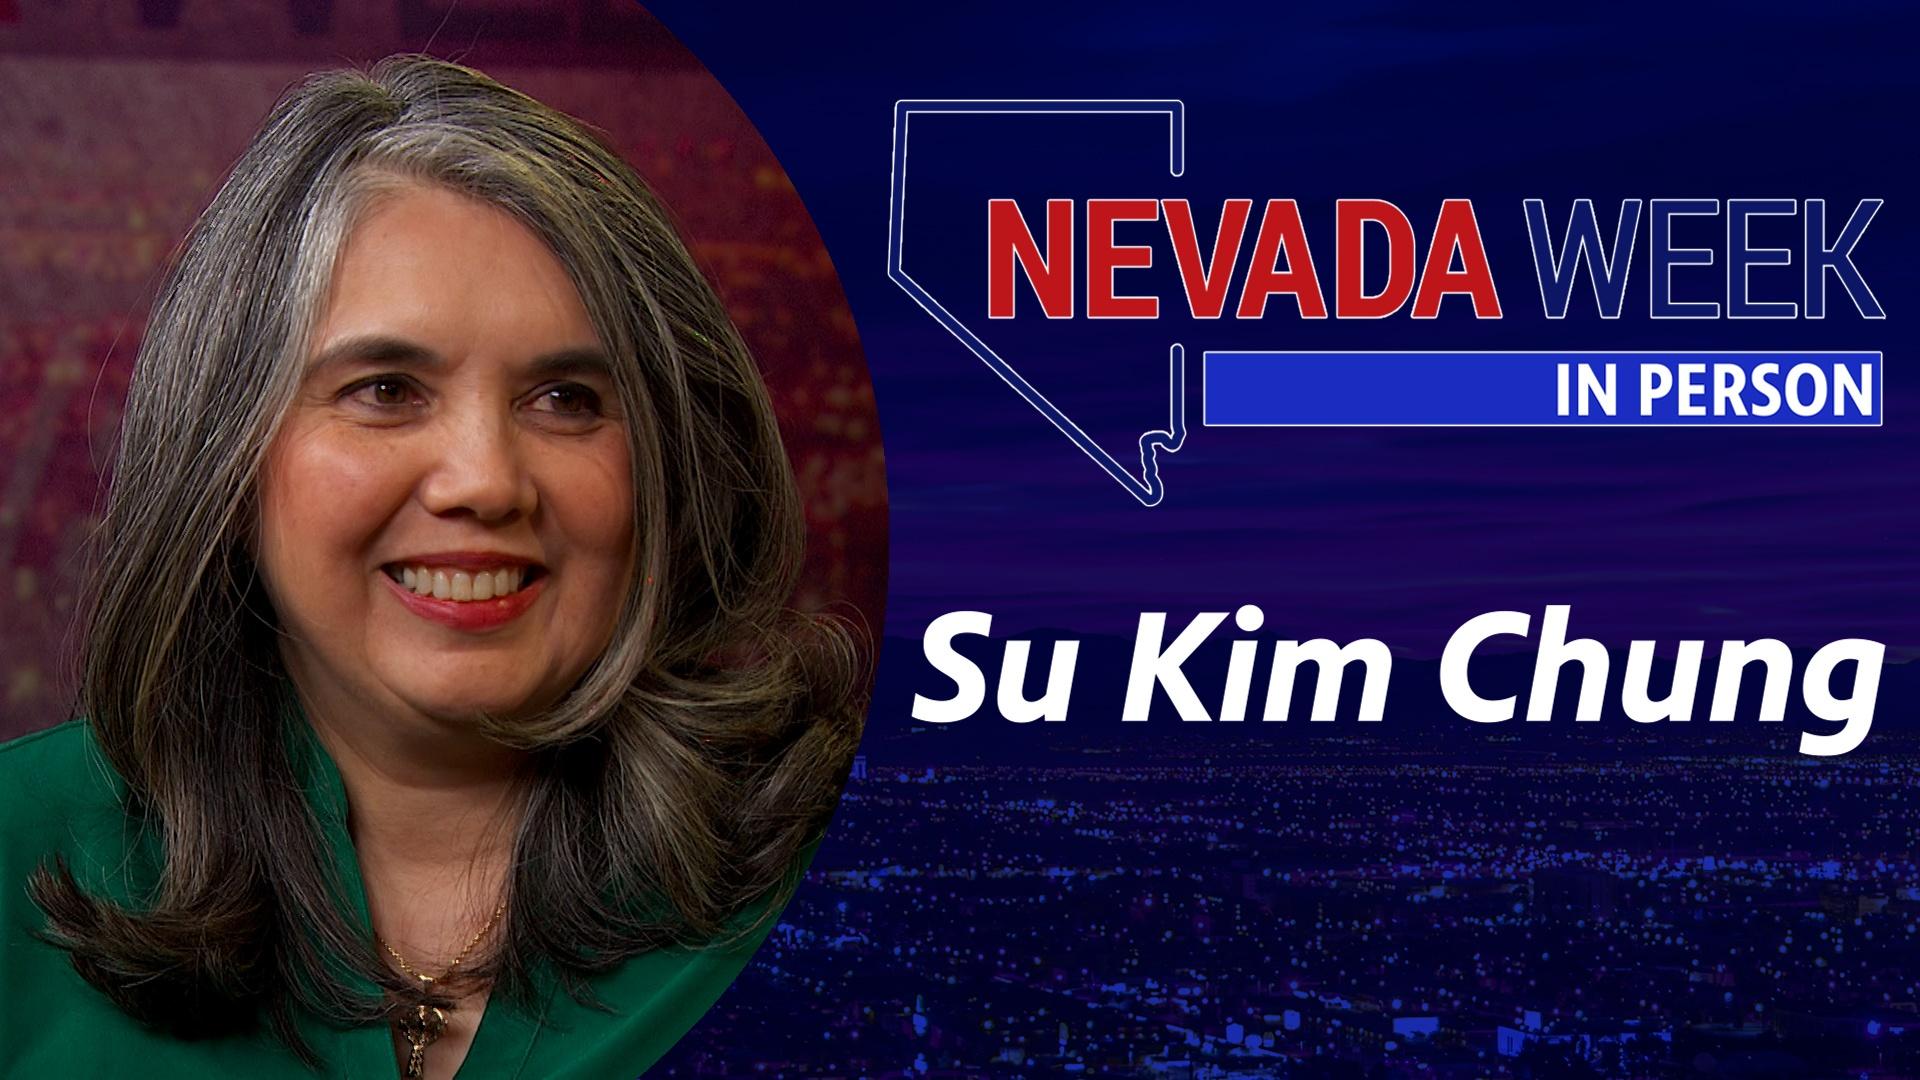 Nevada Week In Person | Su Kim Chung